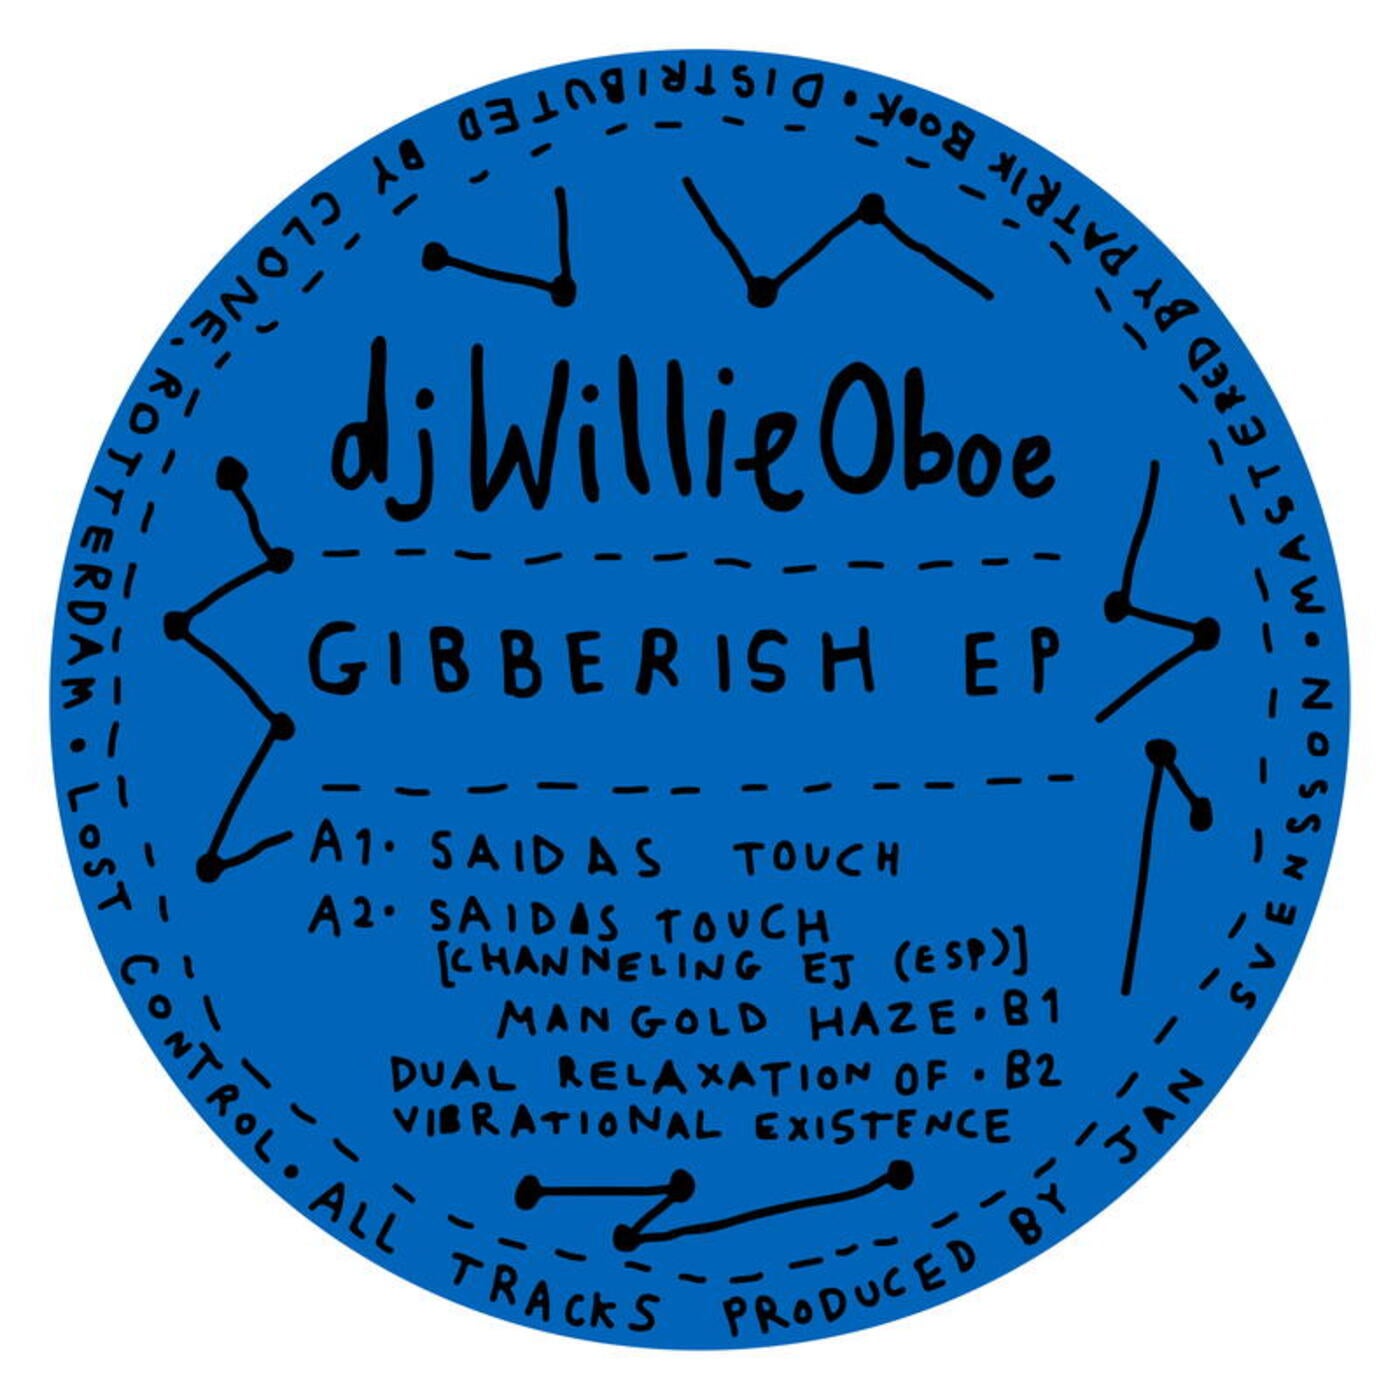 Download Gibberish EP on Electrobuzz